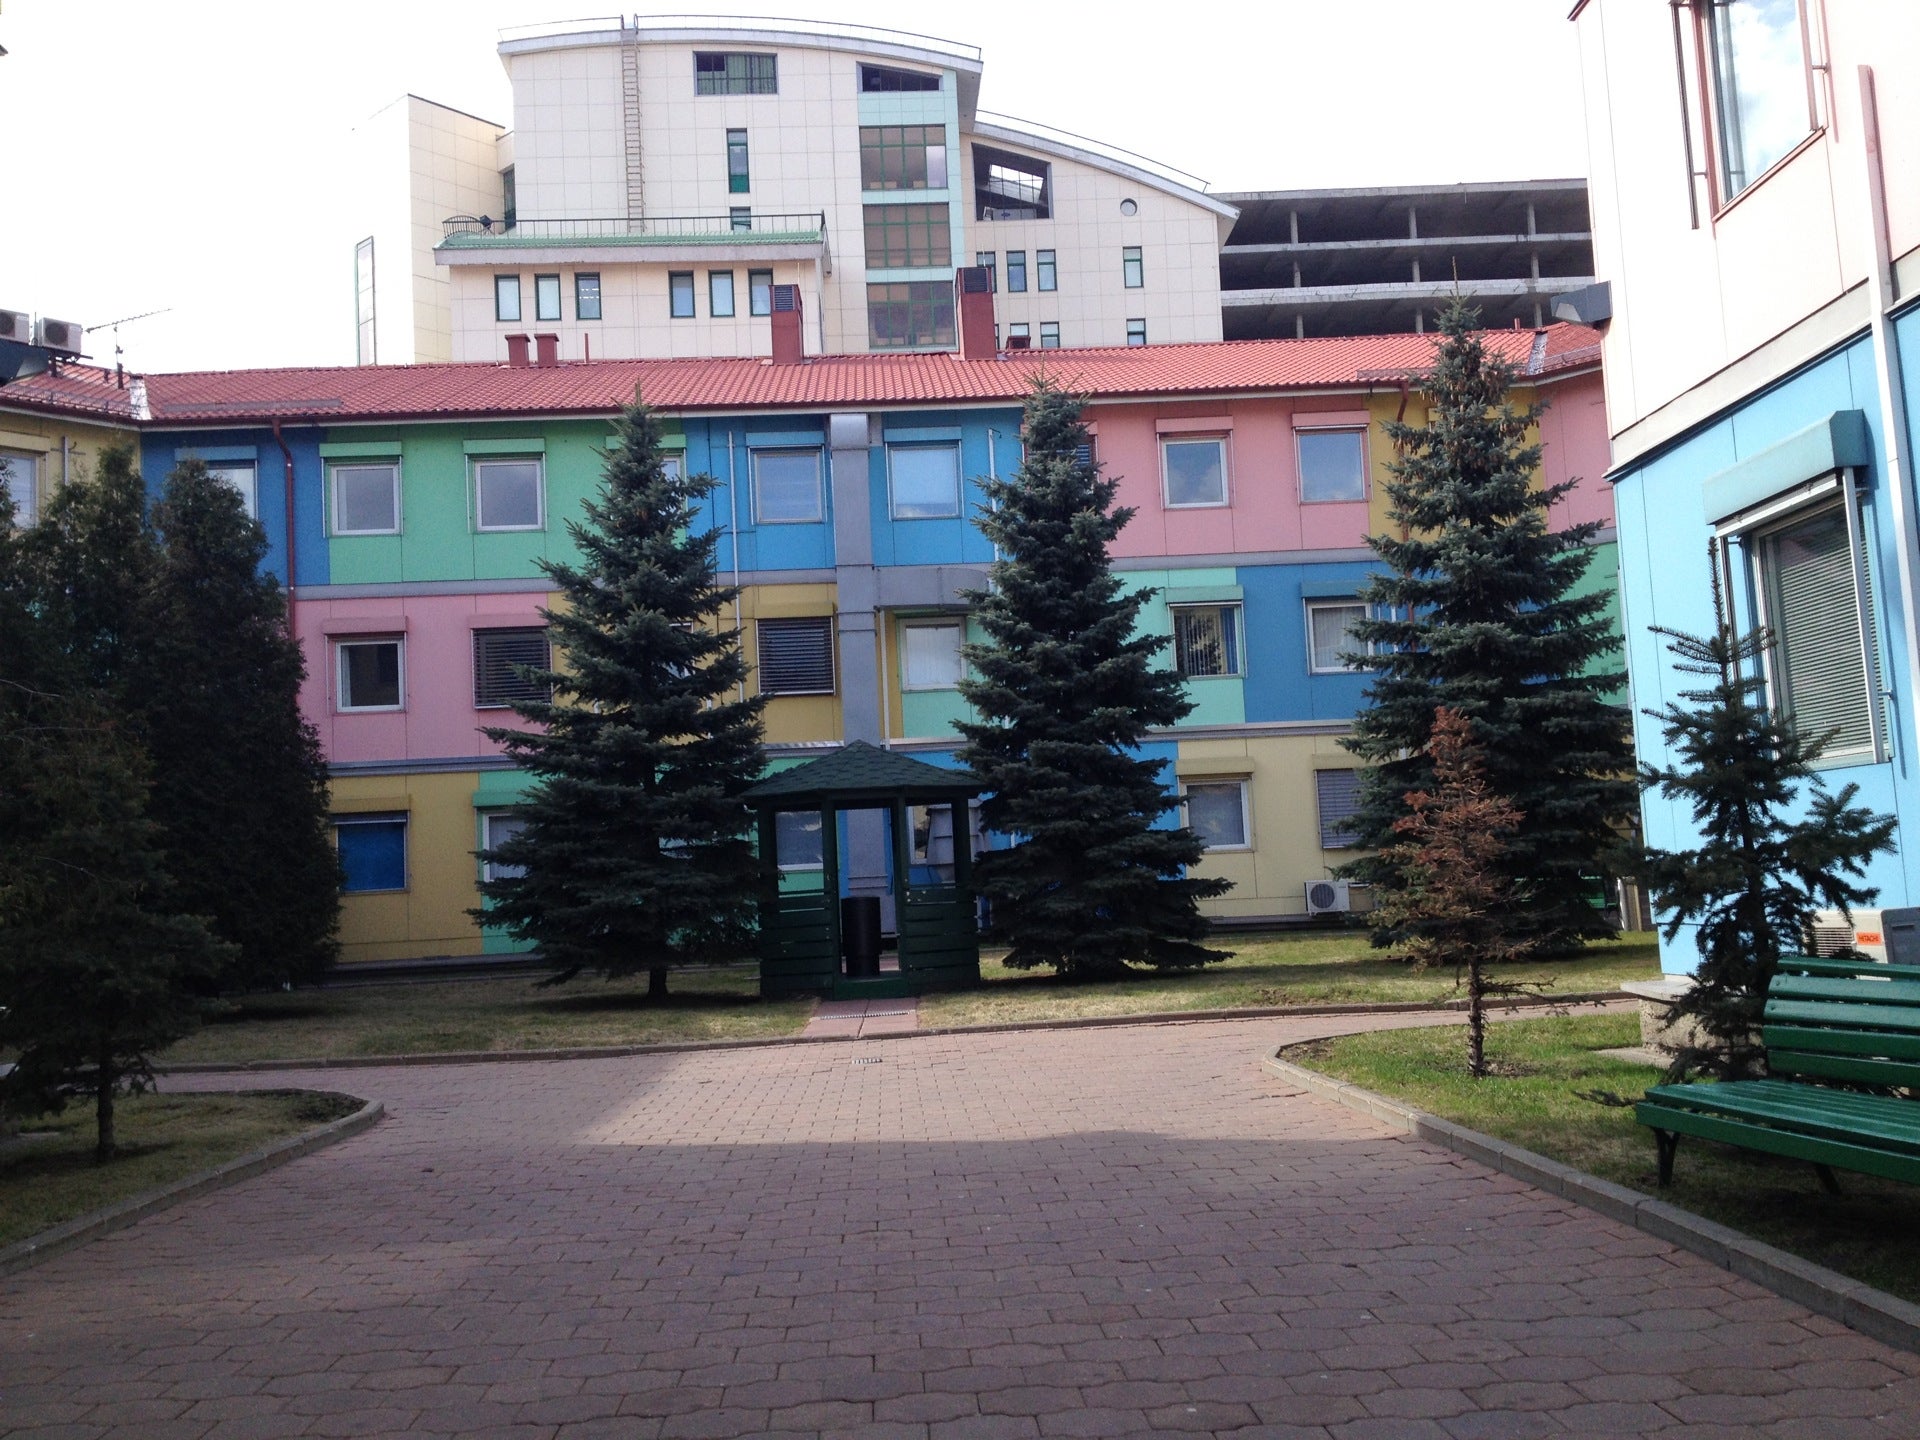 Ново садовая спид центр. Cargill офис в Москве.